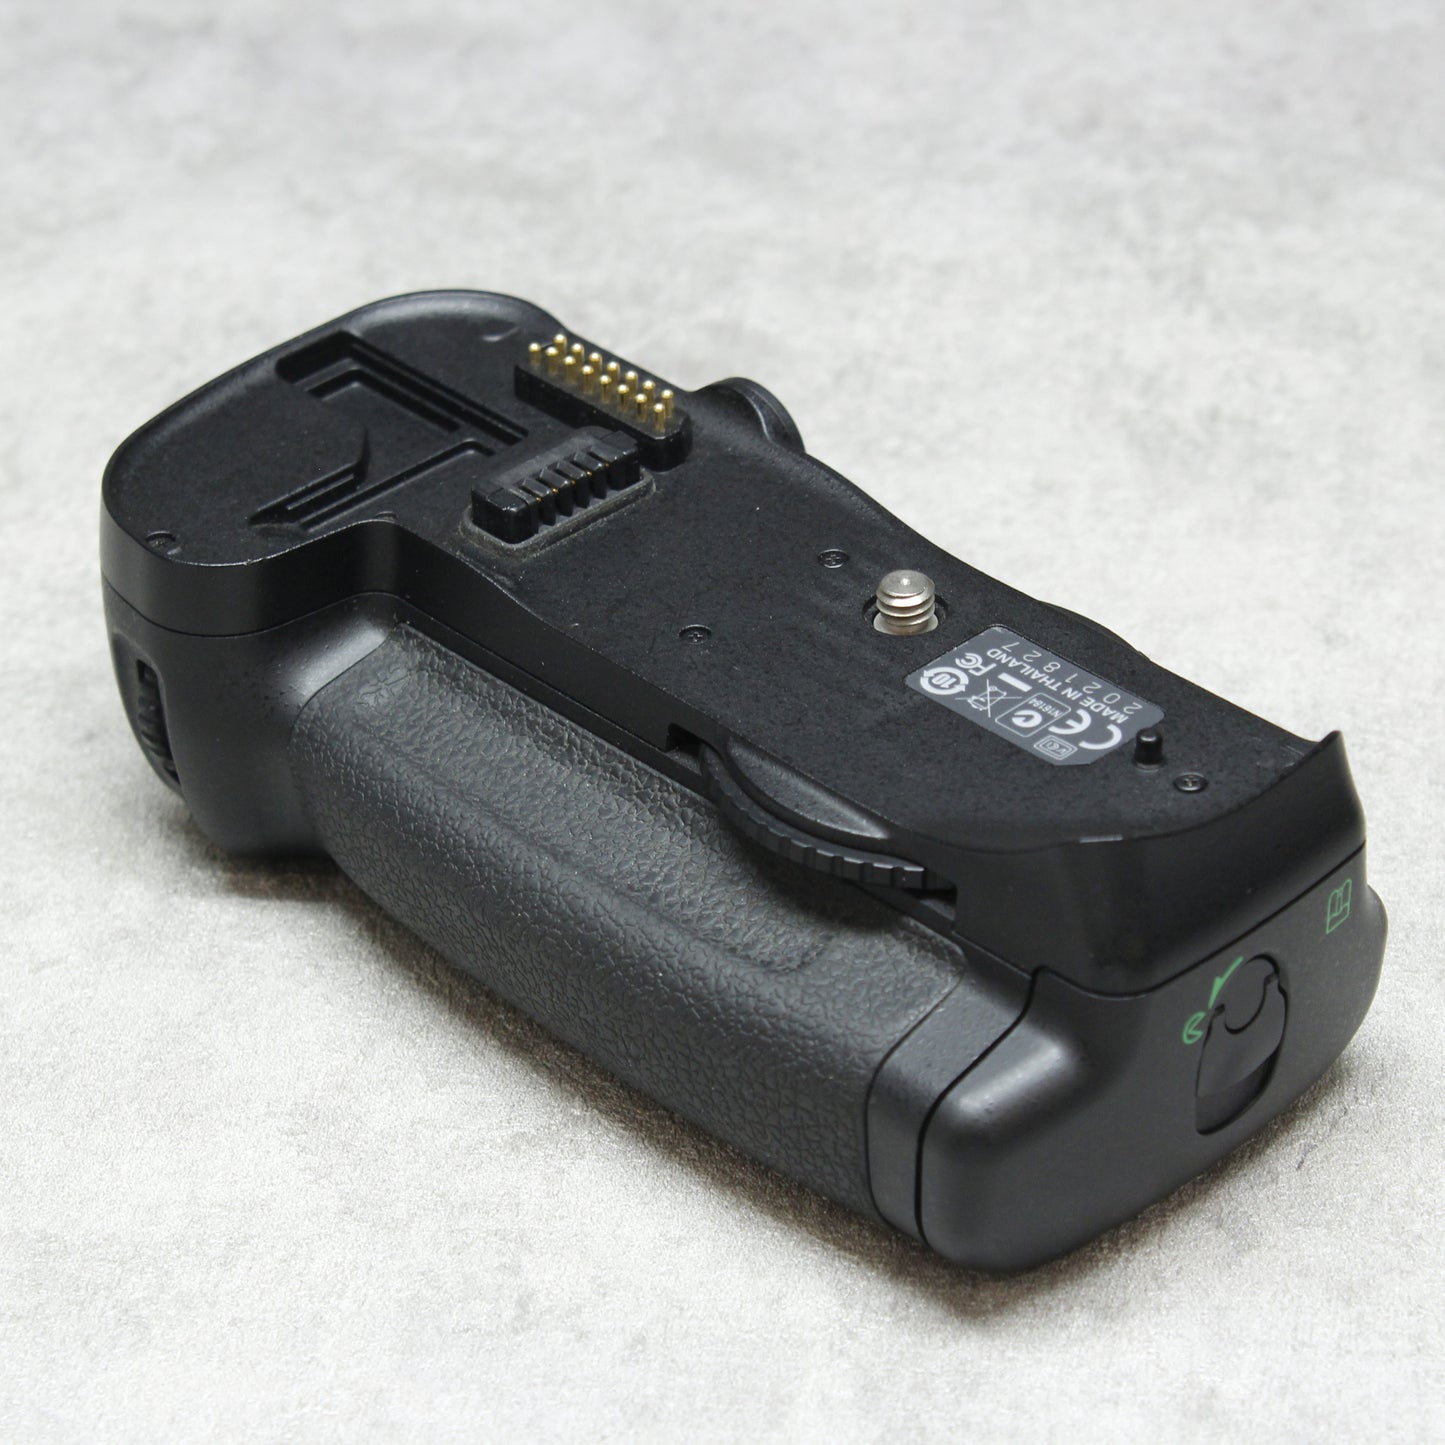 Nikon D700, MB-D10, 50mm 1.8Gレンズ & SB800